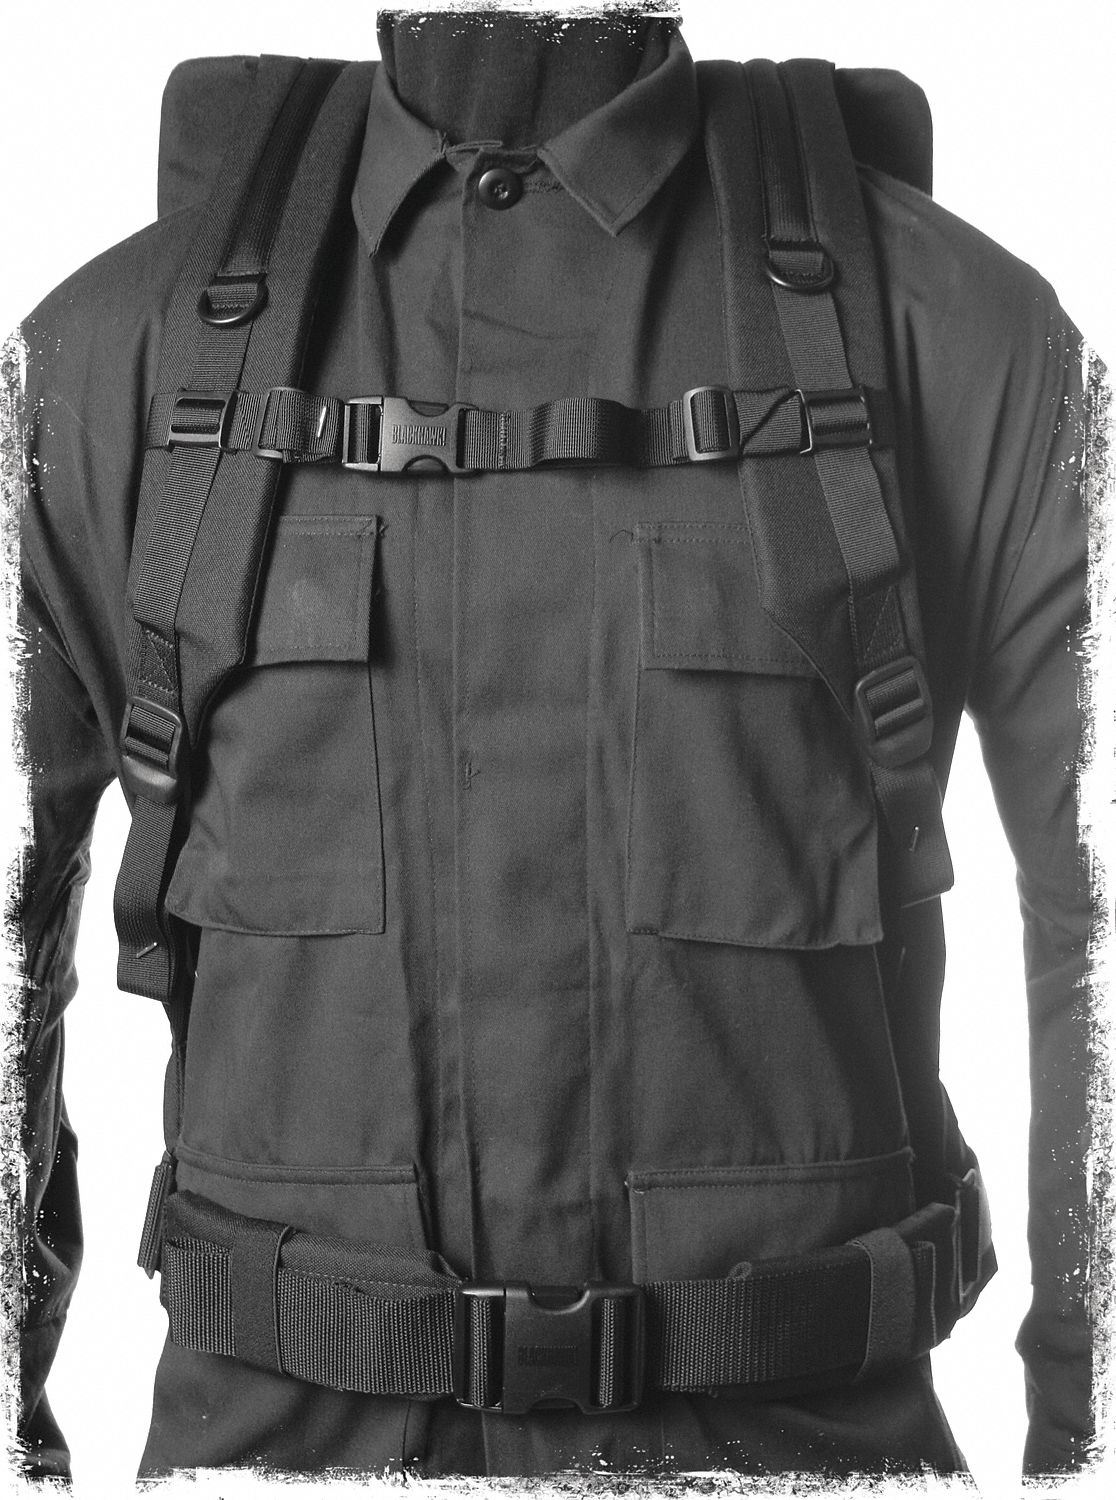 BLACKHAWK Backpack Kit: Black, 1000 Denier NyTaneon Nylon and Padded ...